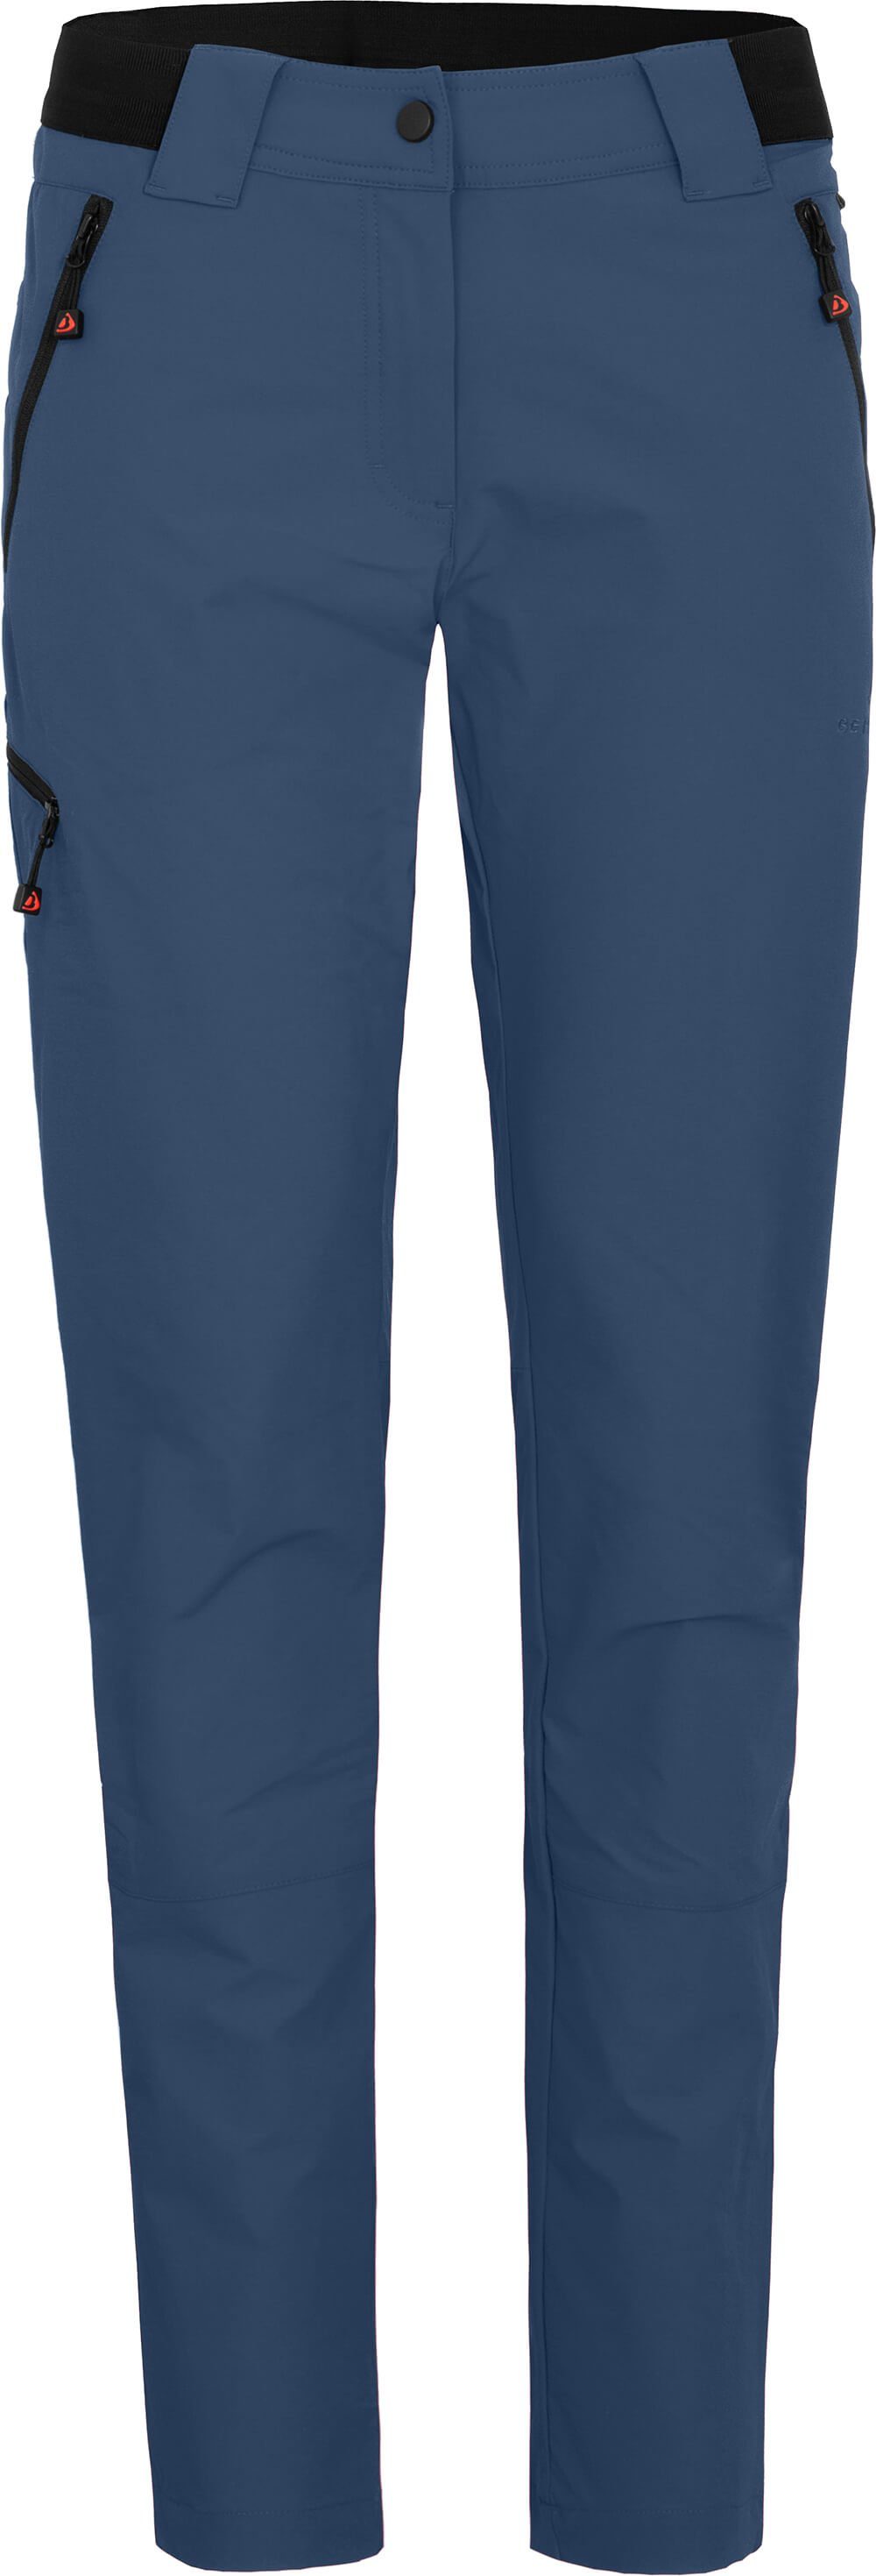 Bergson Outdoorhose VIDAA COMFORT (slim) Damen Wanderhose, leicht, strapazierfähig, Normalgrößen, enzianblau